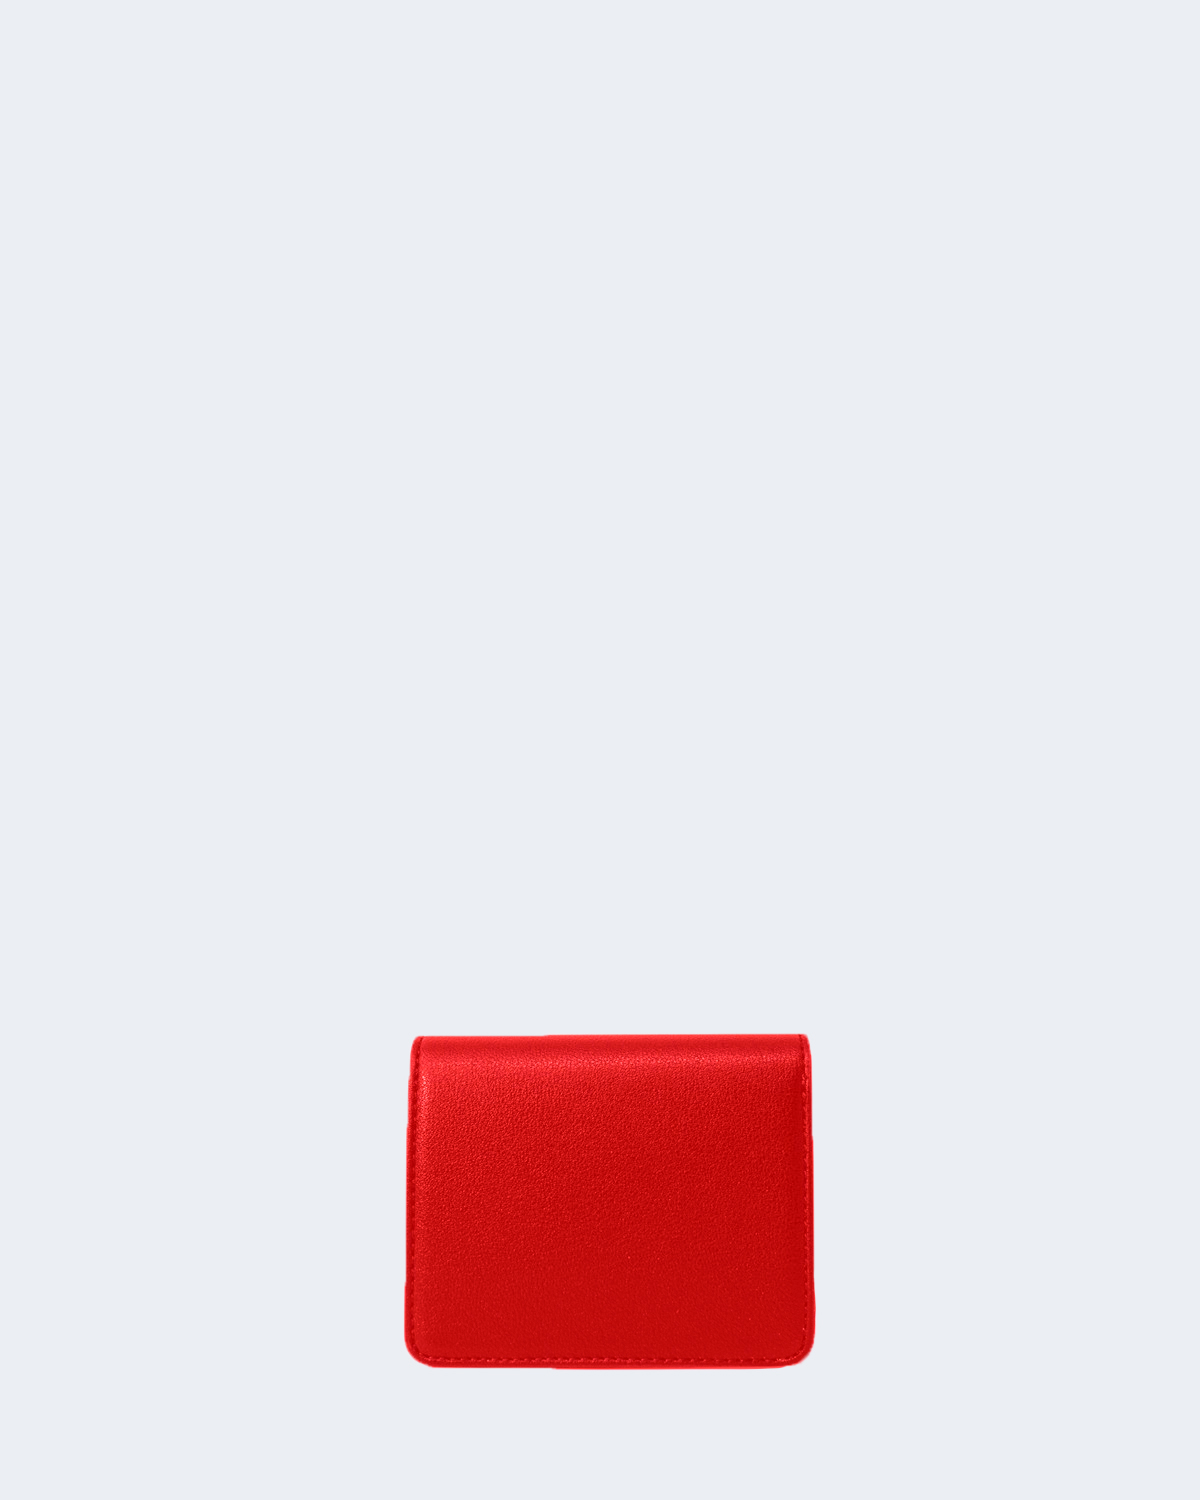 Portafoglio piccolo Colore rosso - MOHITO - 6749Z-33X